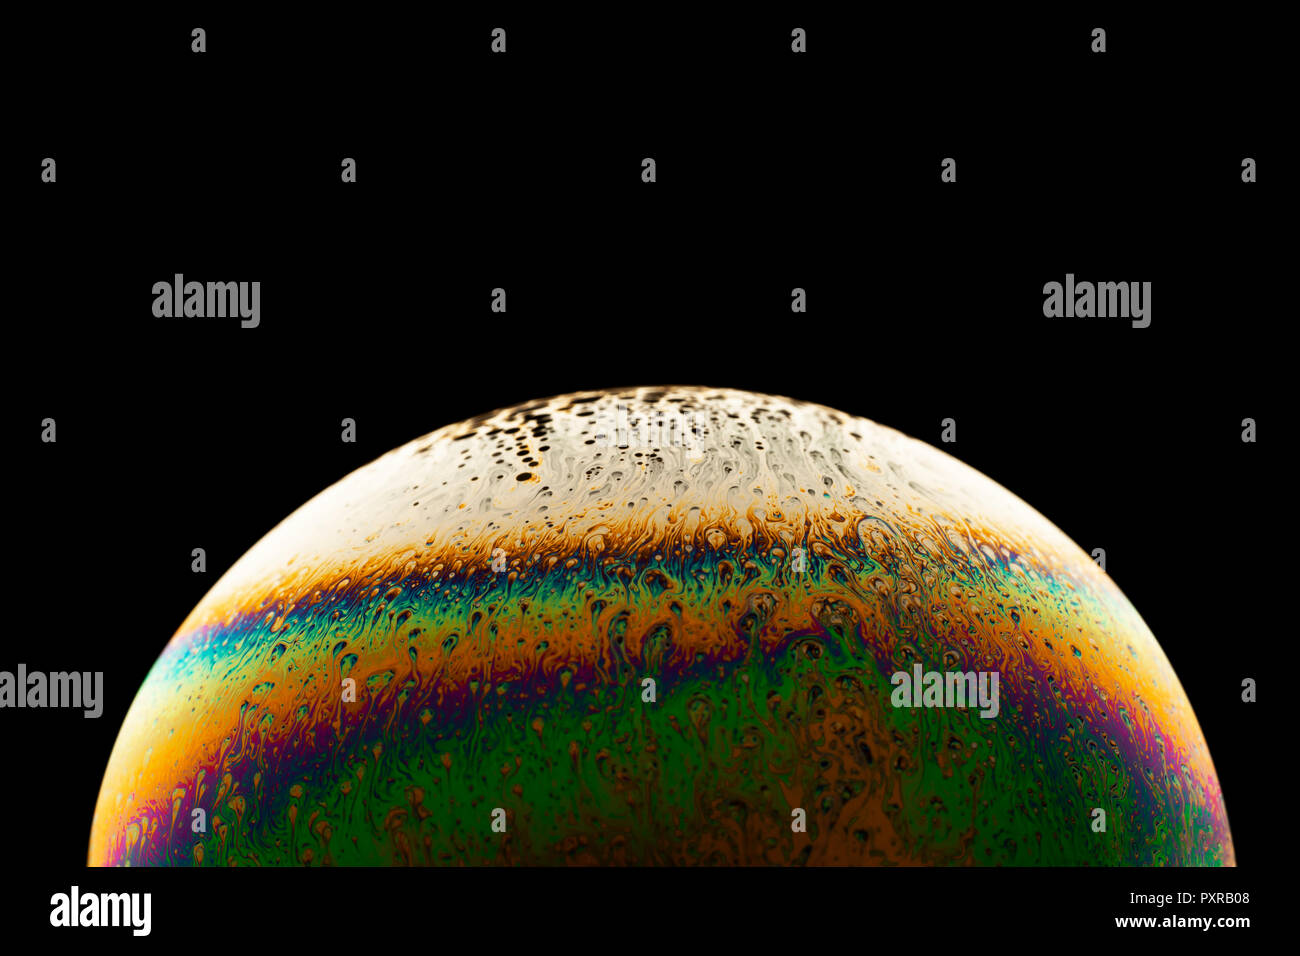 La superficie brillante de una burbuja de jabón, close-up Foto de stock